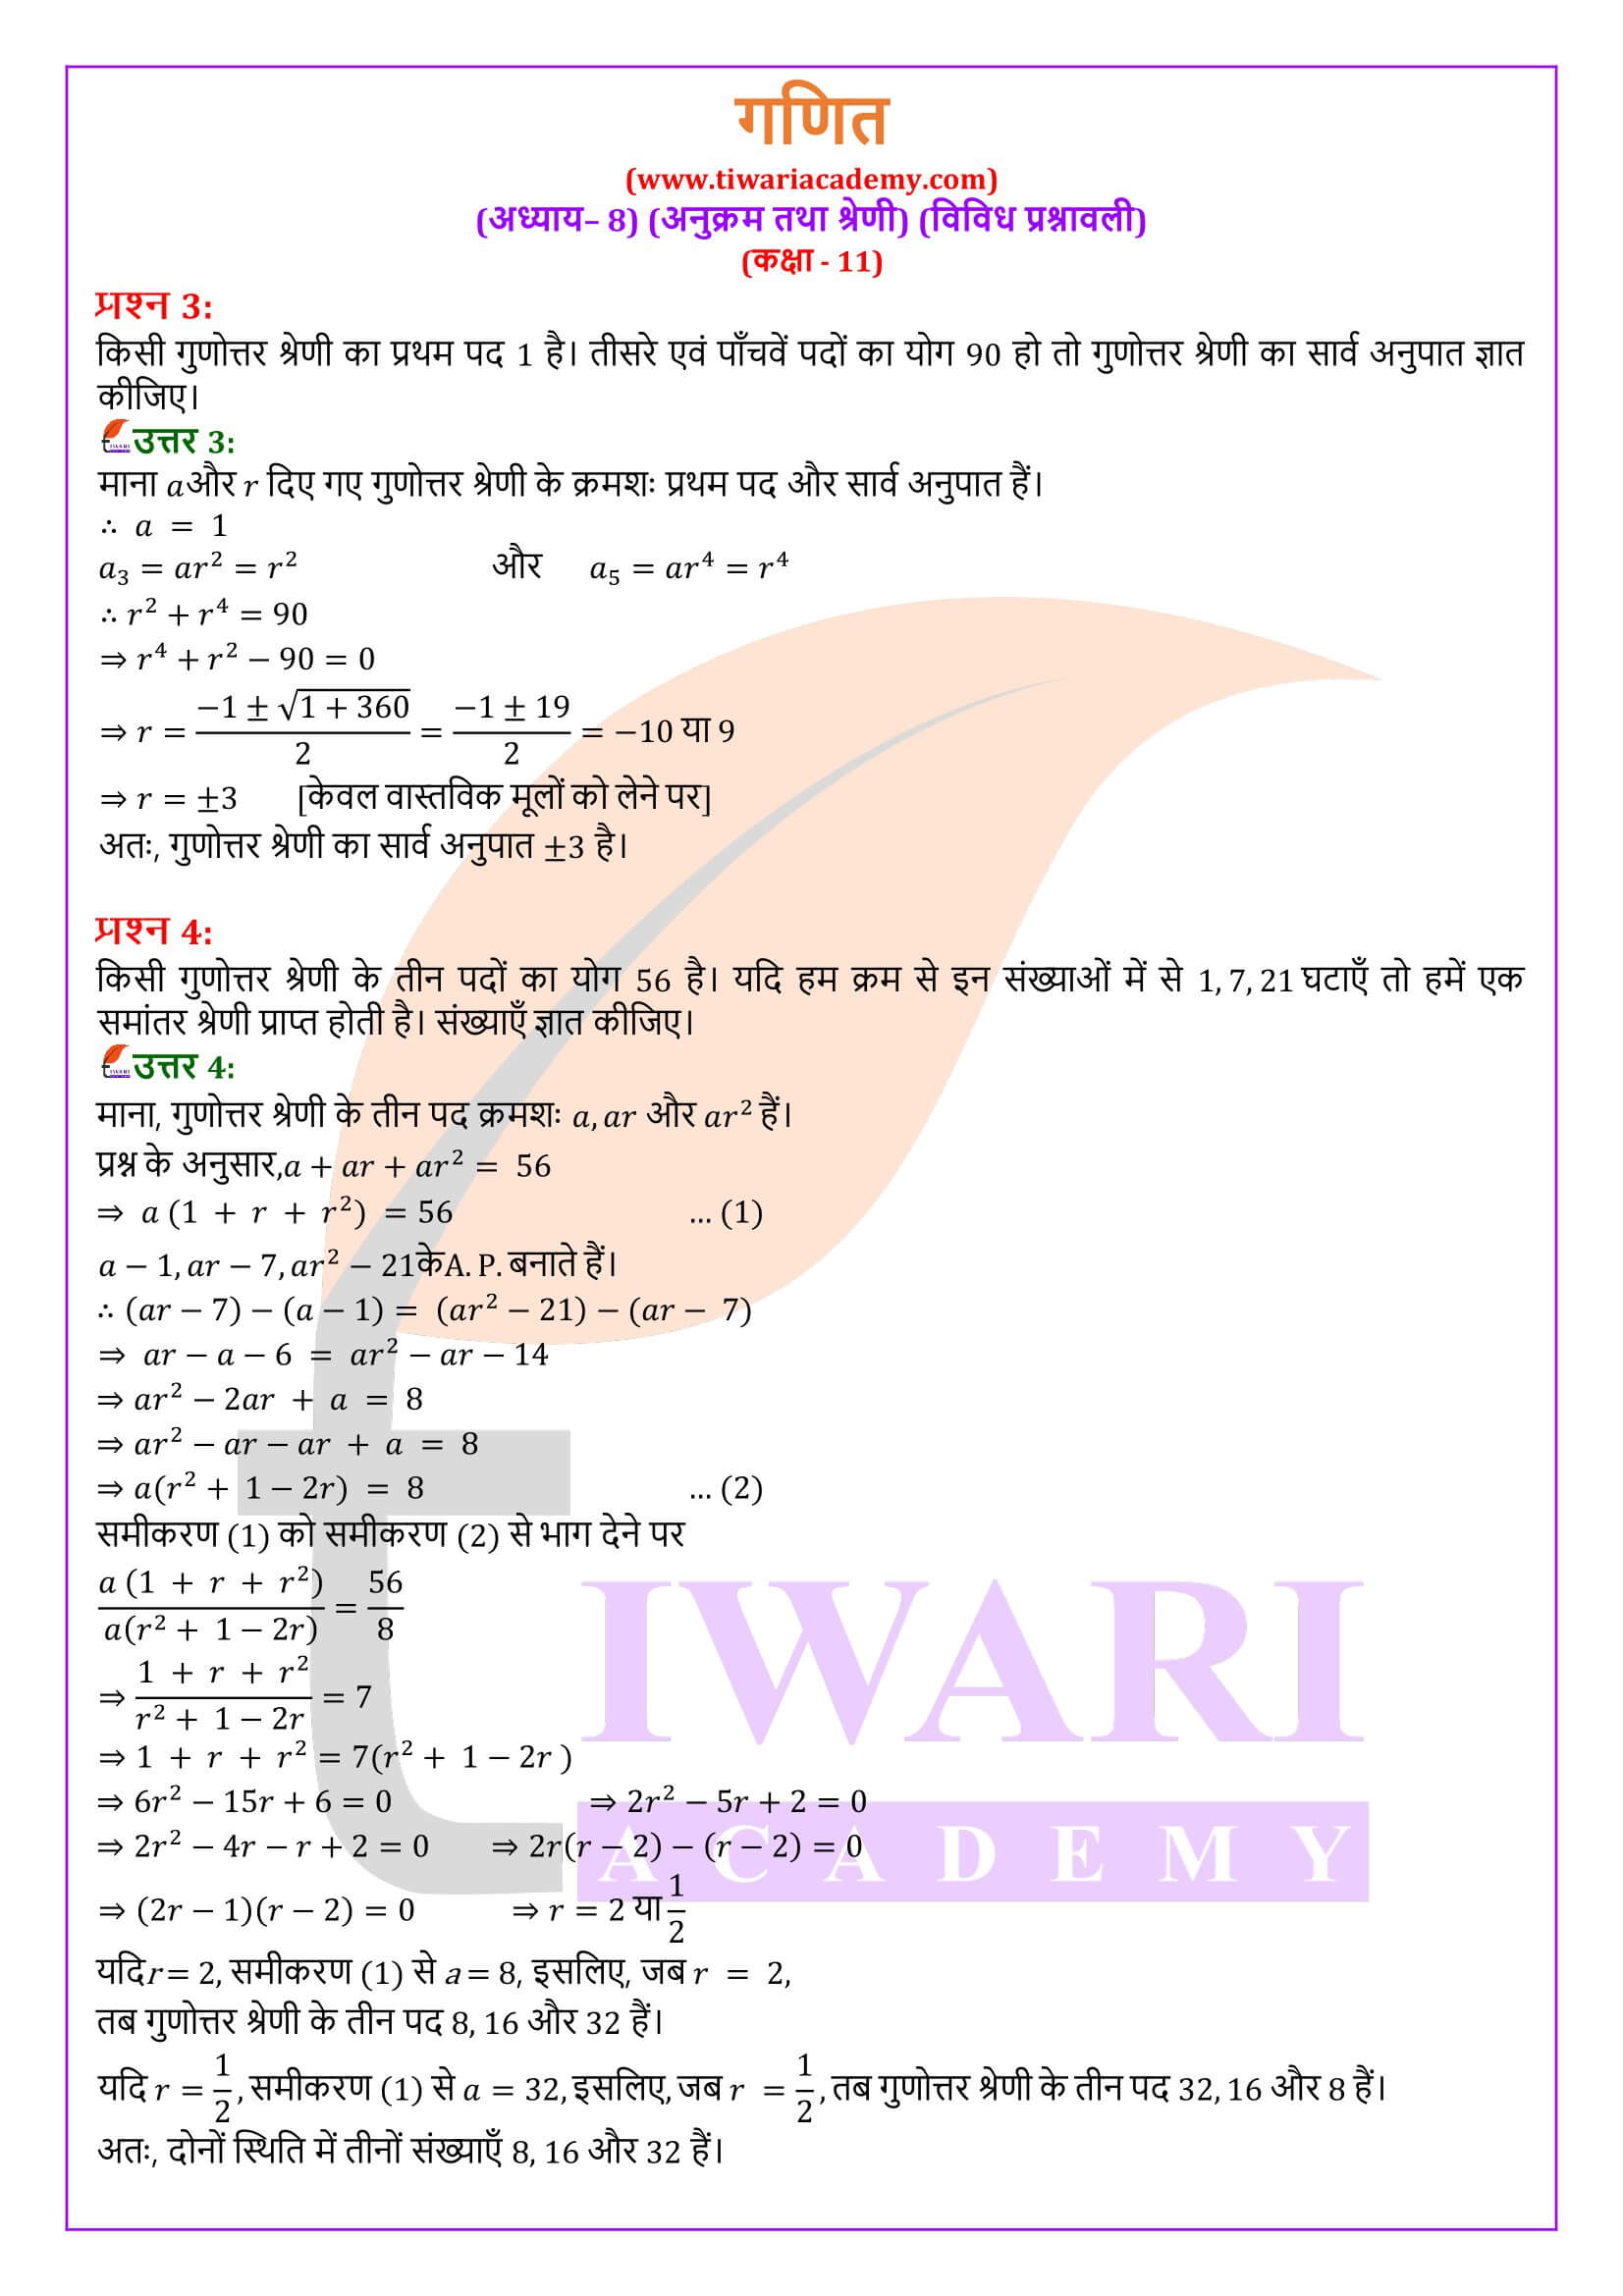 एनसीईआरटी समाधान कक्षा 11 गणित अध्याय 8 विविध प्रश्नावली हिंदी में